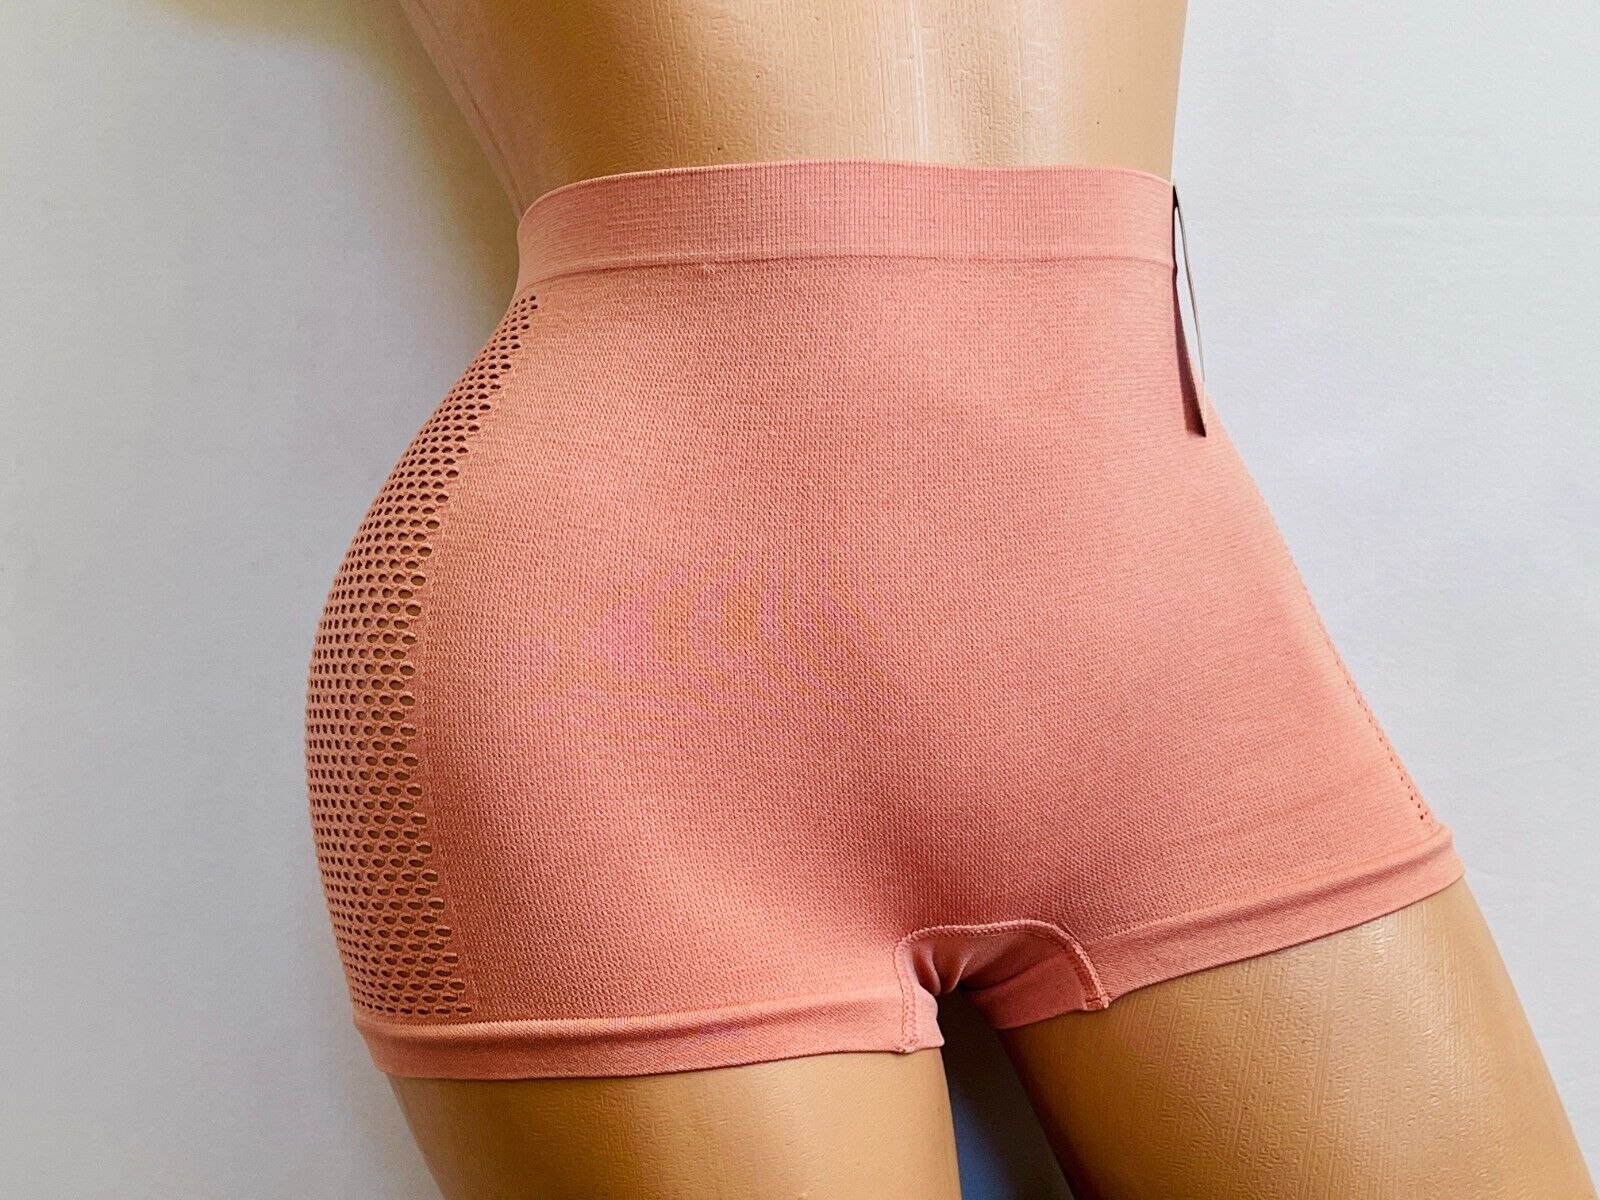 6 Boyshorts sport Active Wear Yoga Seamless Short undies shortie Underwear S-XL EVA - фотография #10